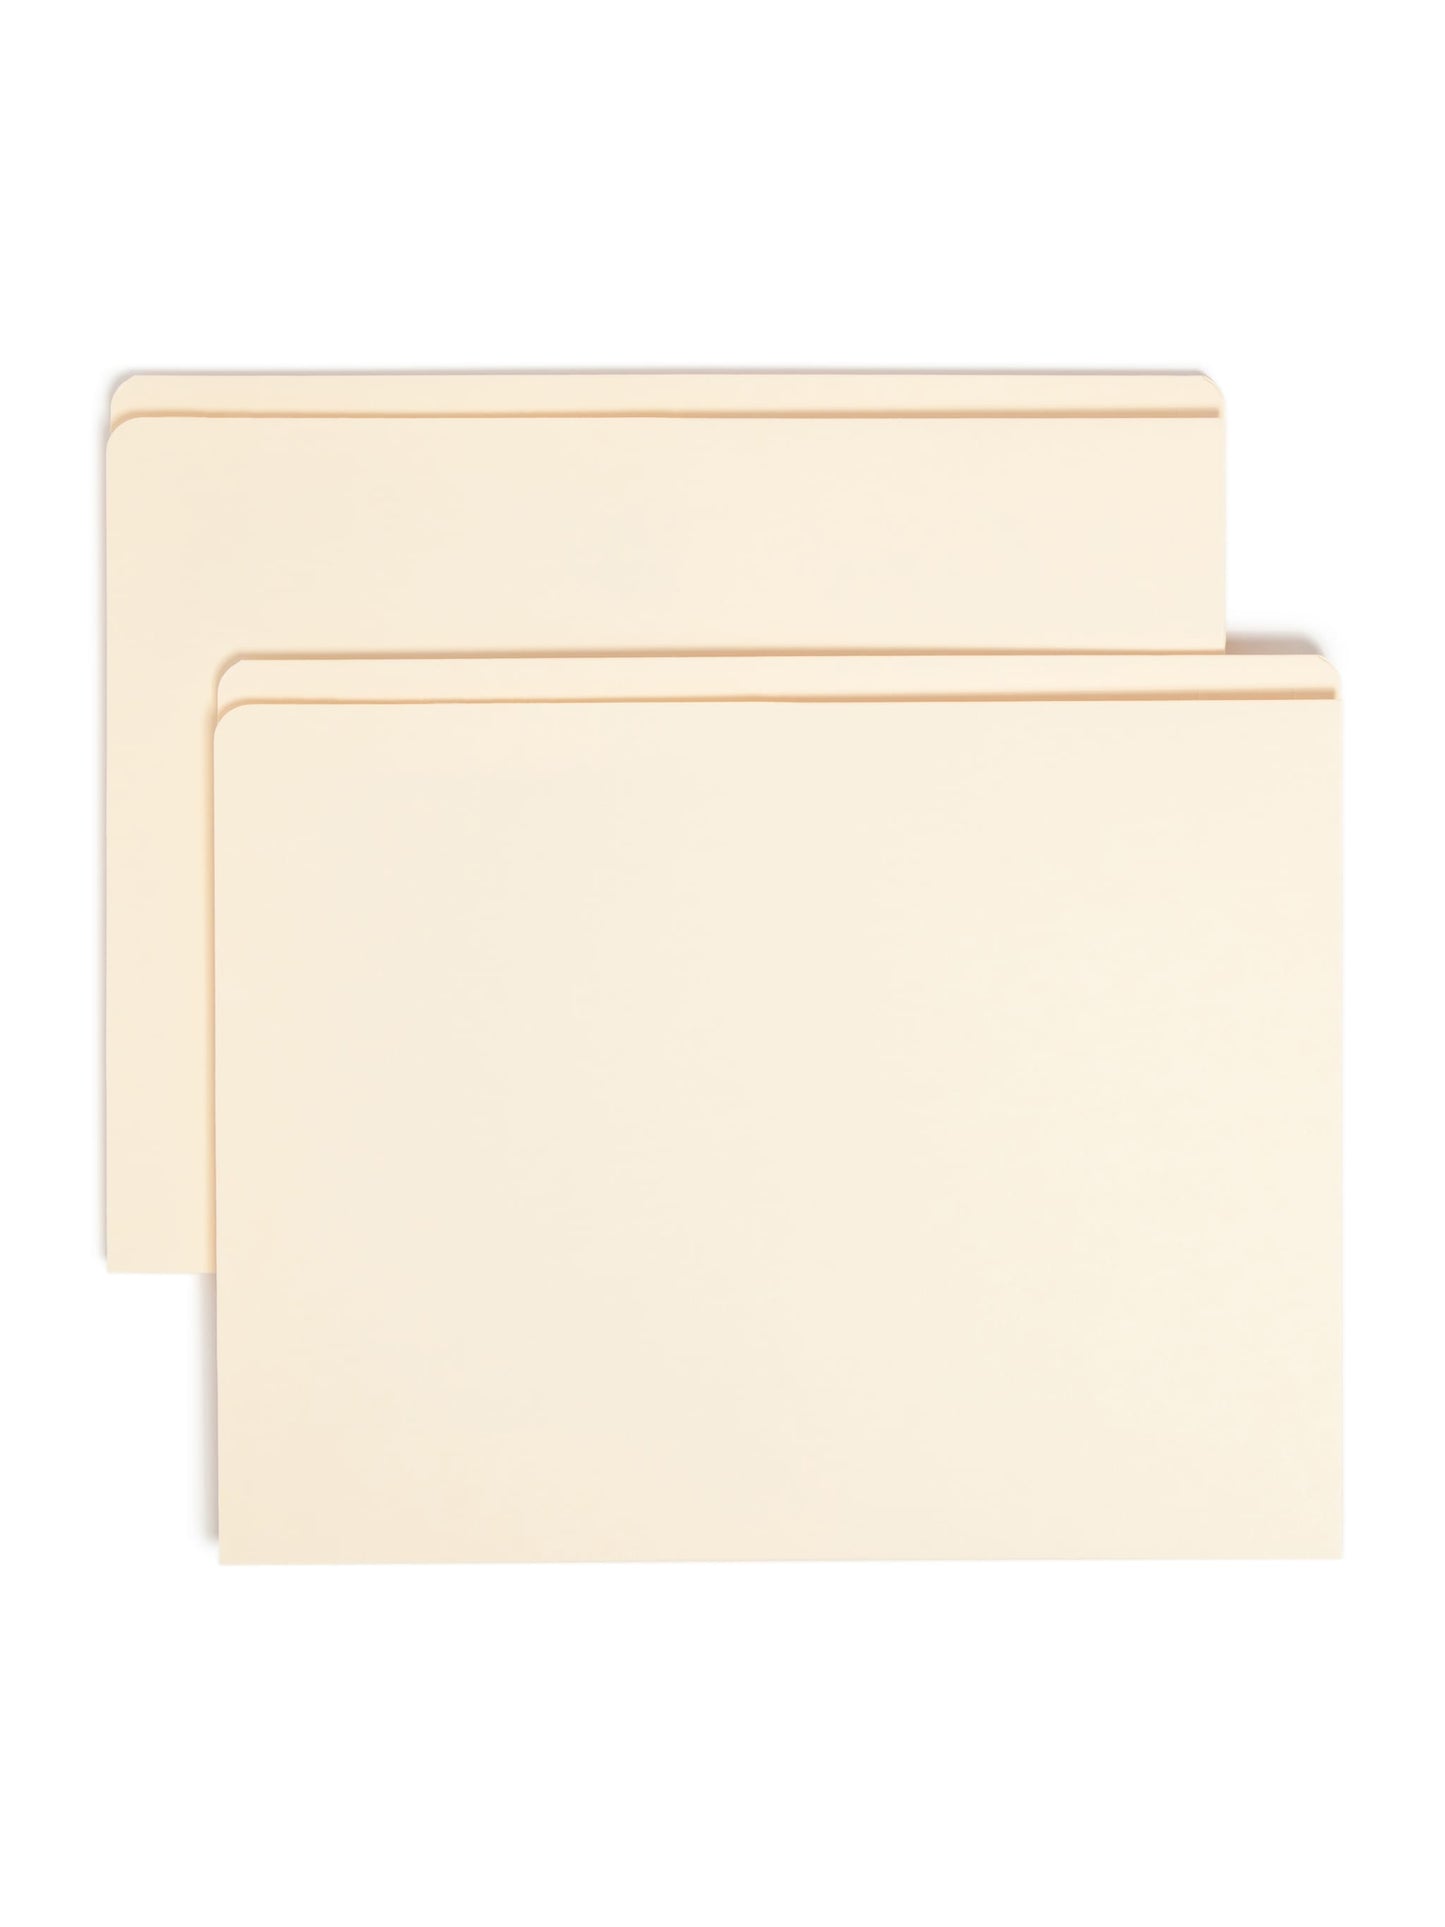 Reinforced Tab Pocket File Folders, Manila Color, Letter Size, Set of 50, 086486103152